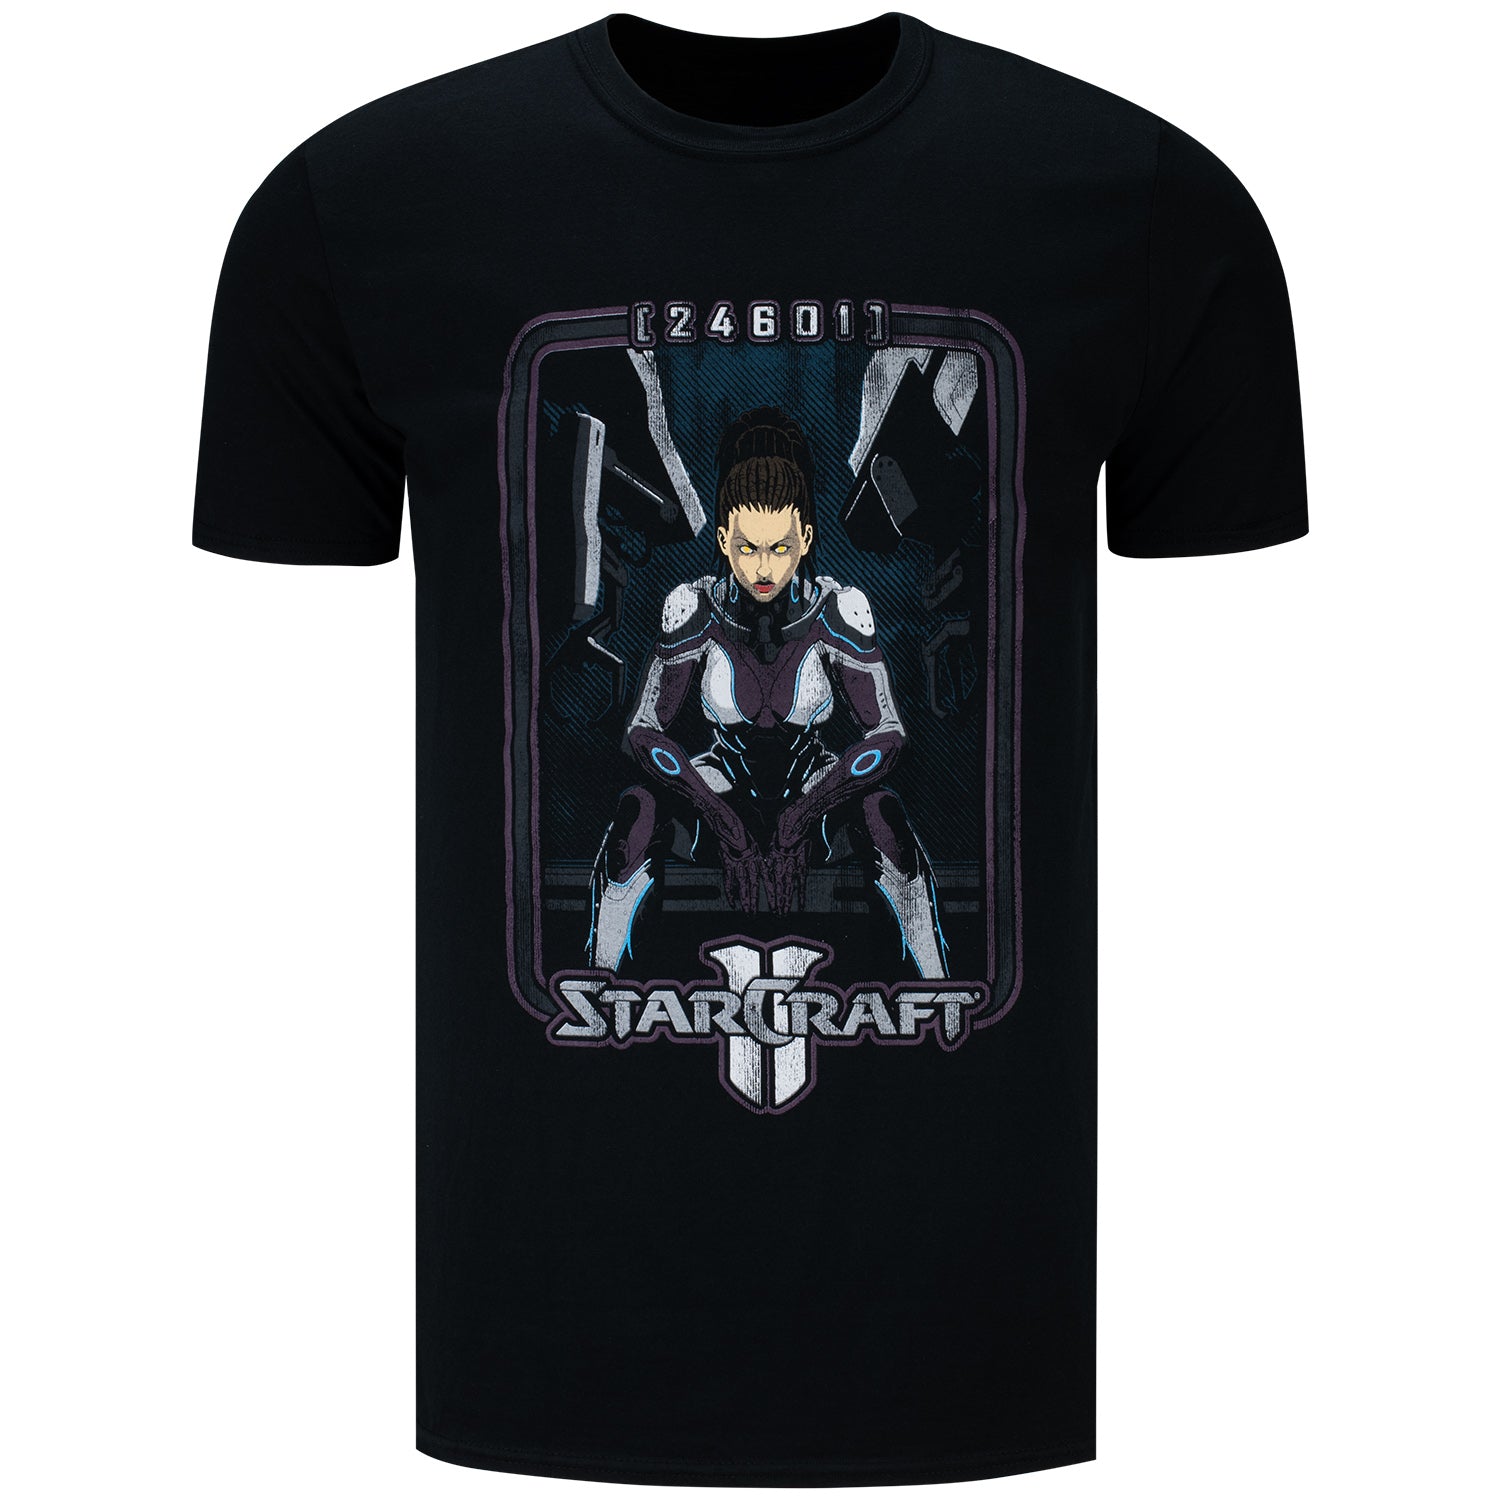 StarCraft Kerrigan J!NX Black Anniversary T-Shirt - Front View